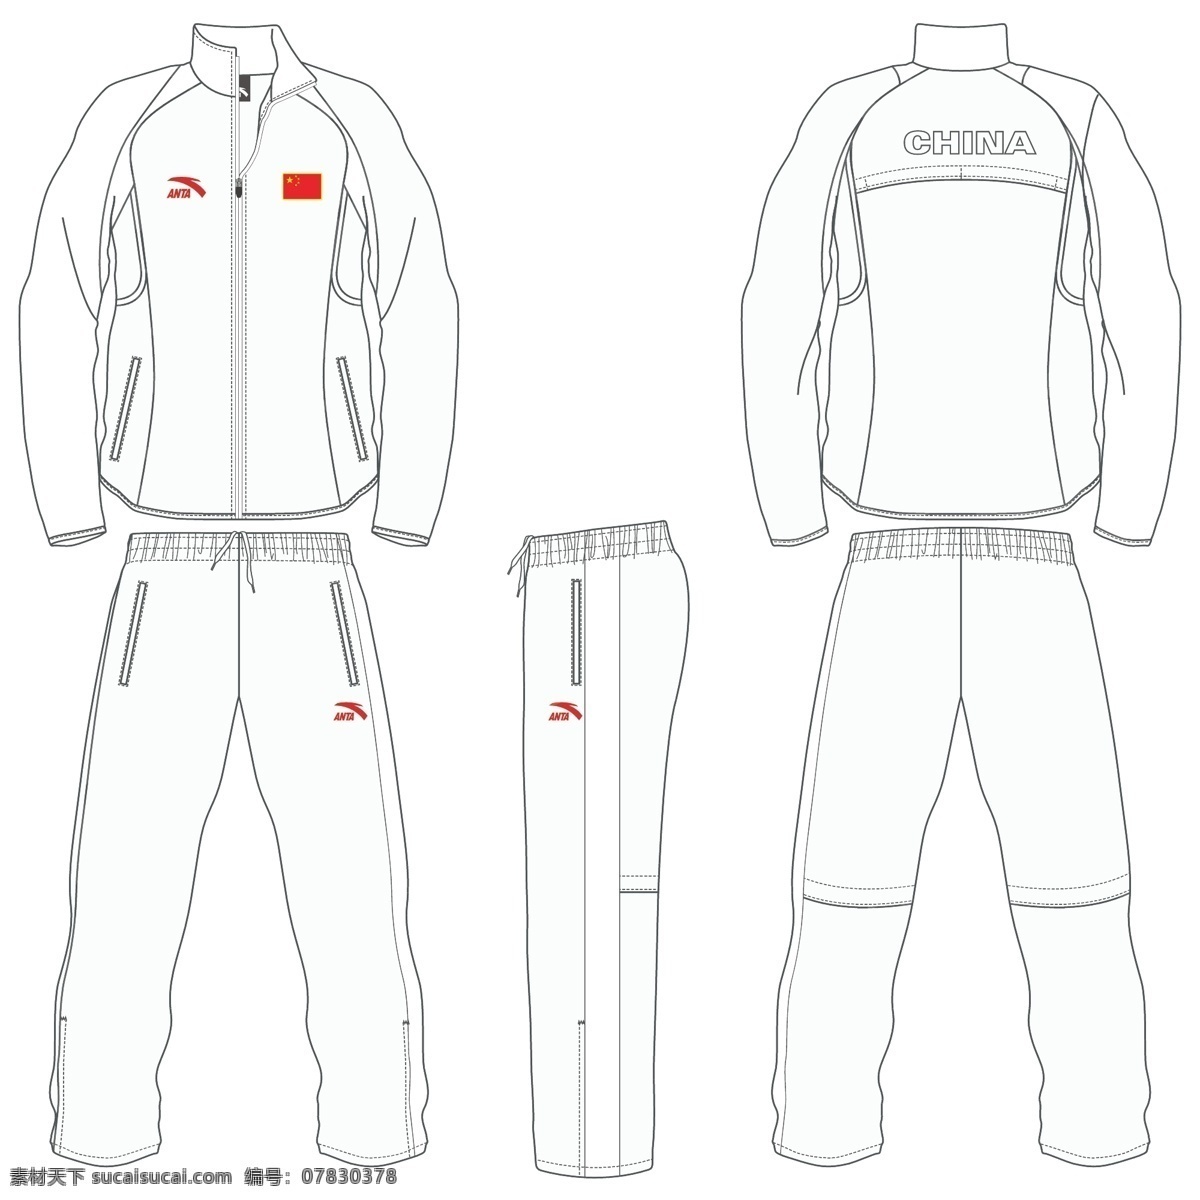 运动服模板 安踏 服装设计 服饰设计 运动服 运动服设计 矢量图库 矢量素材